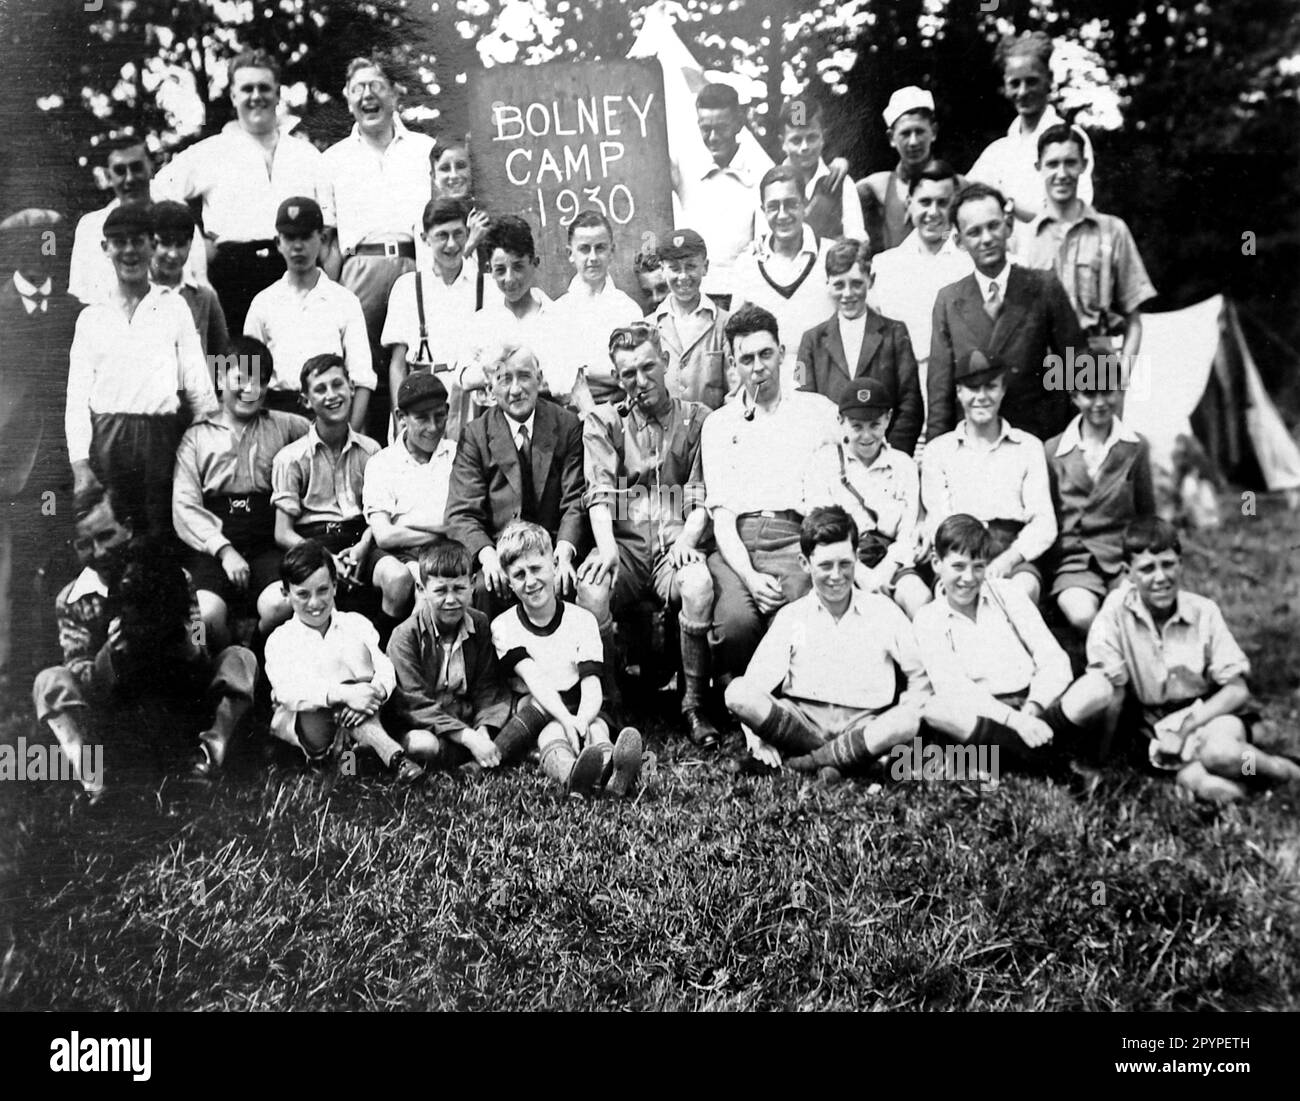 Foto di gruppo del campo di Bolney il giorno dei visitatori, c1930. Da un unico album di fotografie, compilato da K.W. Parkhurst, di un campo di campagna a Bolney (una comunità agricola), Sussex occidentale, Inghilterra, che tra il 1928 e il 1930 era una destinazione regolare per un gruppo di giovani tra cui il signor Parkhurst. Ciò è avvenuto durante il periodo della Grande depressione. Foto Stock